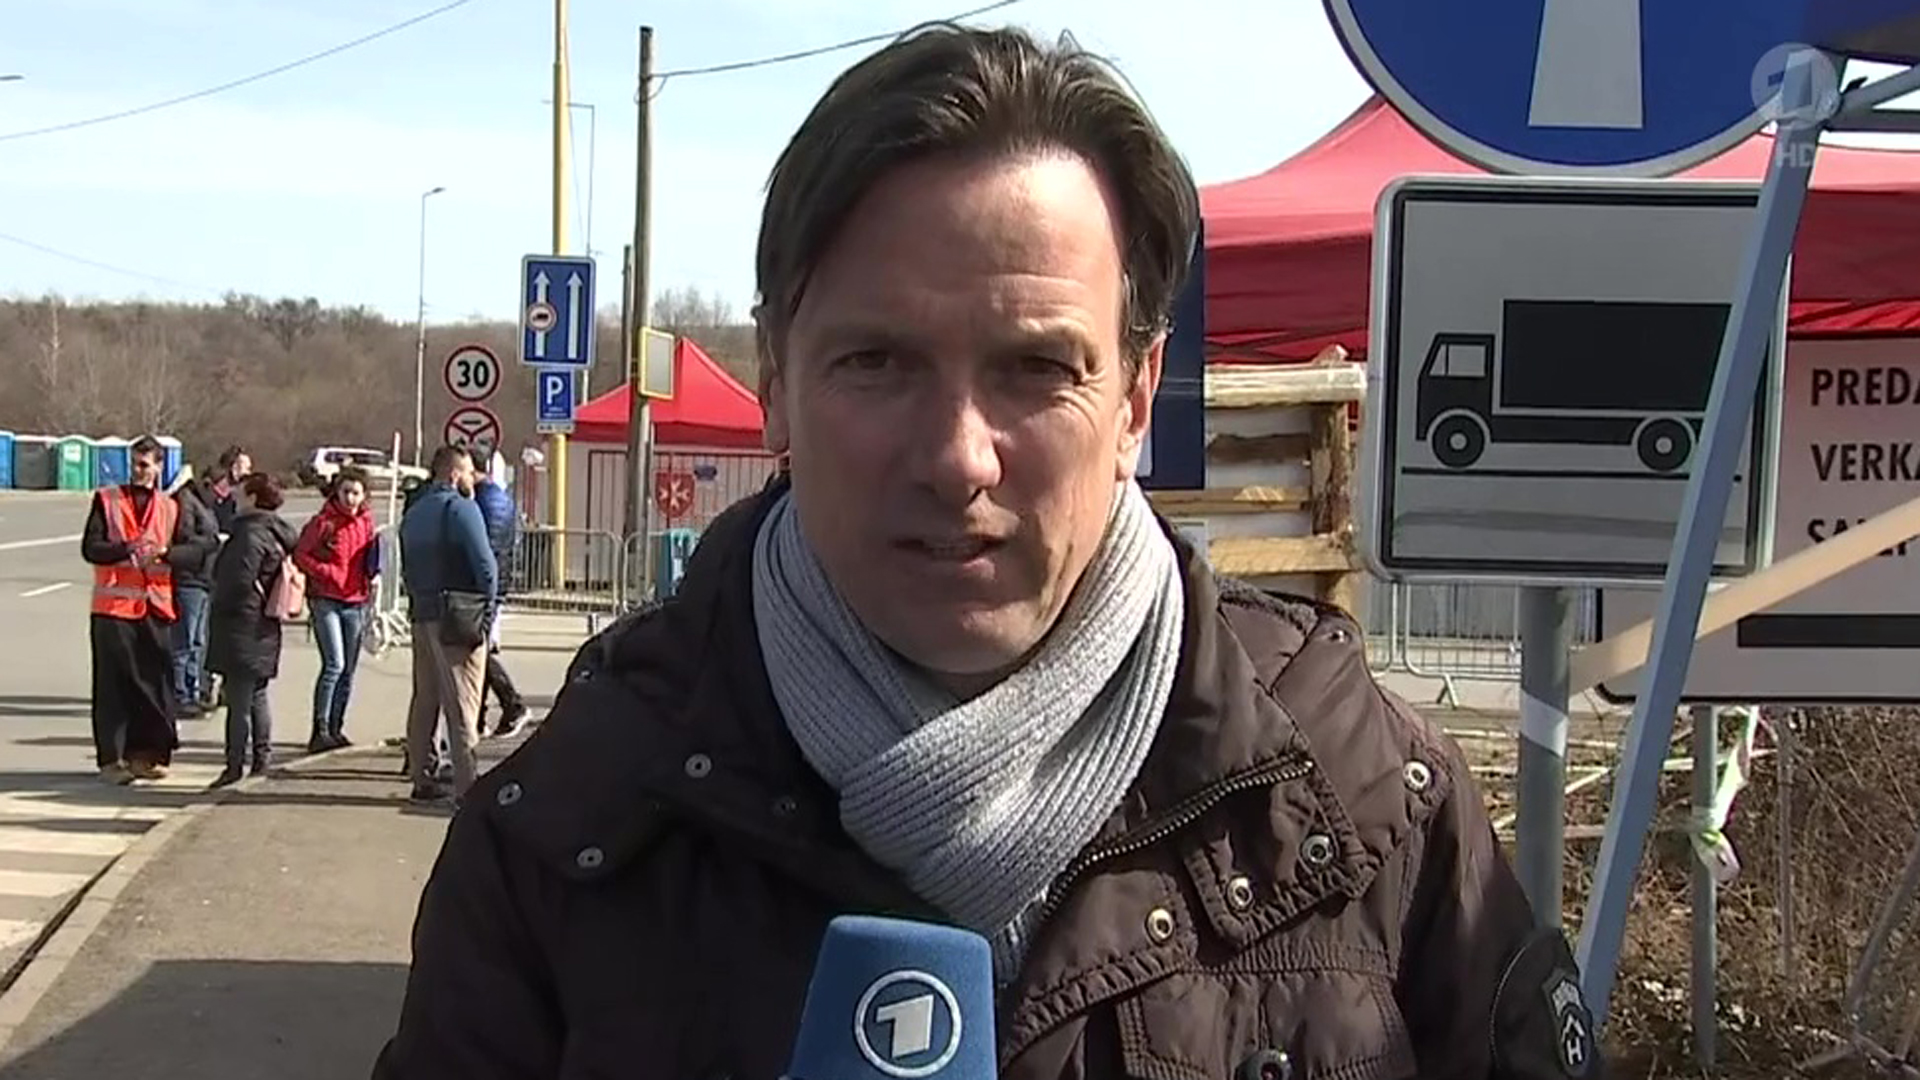 "Wesentlich weniger Flüchtlinge kommen derzeit an", Danko Handrick, MDR, zzt. an ukrainisch-slowakischer Grenze